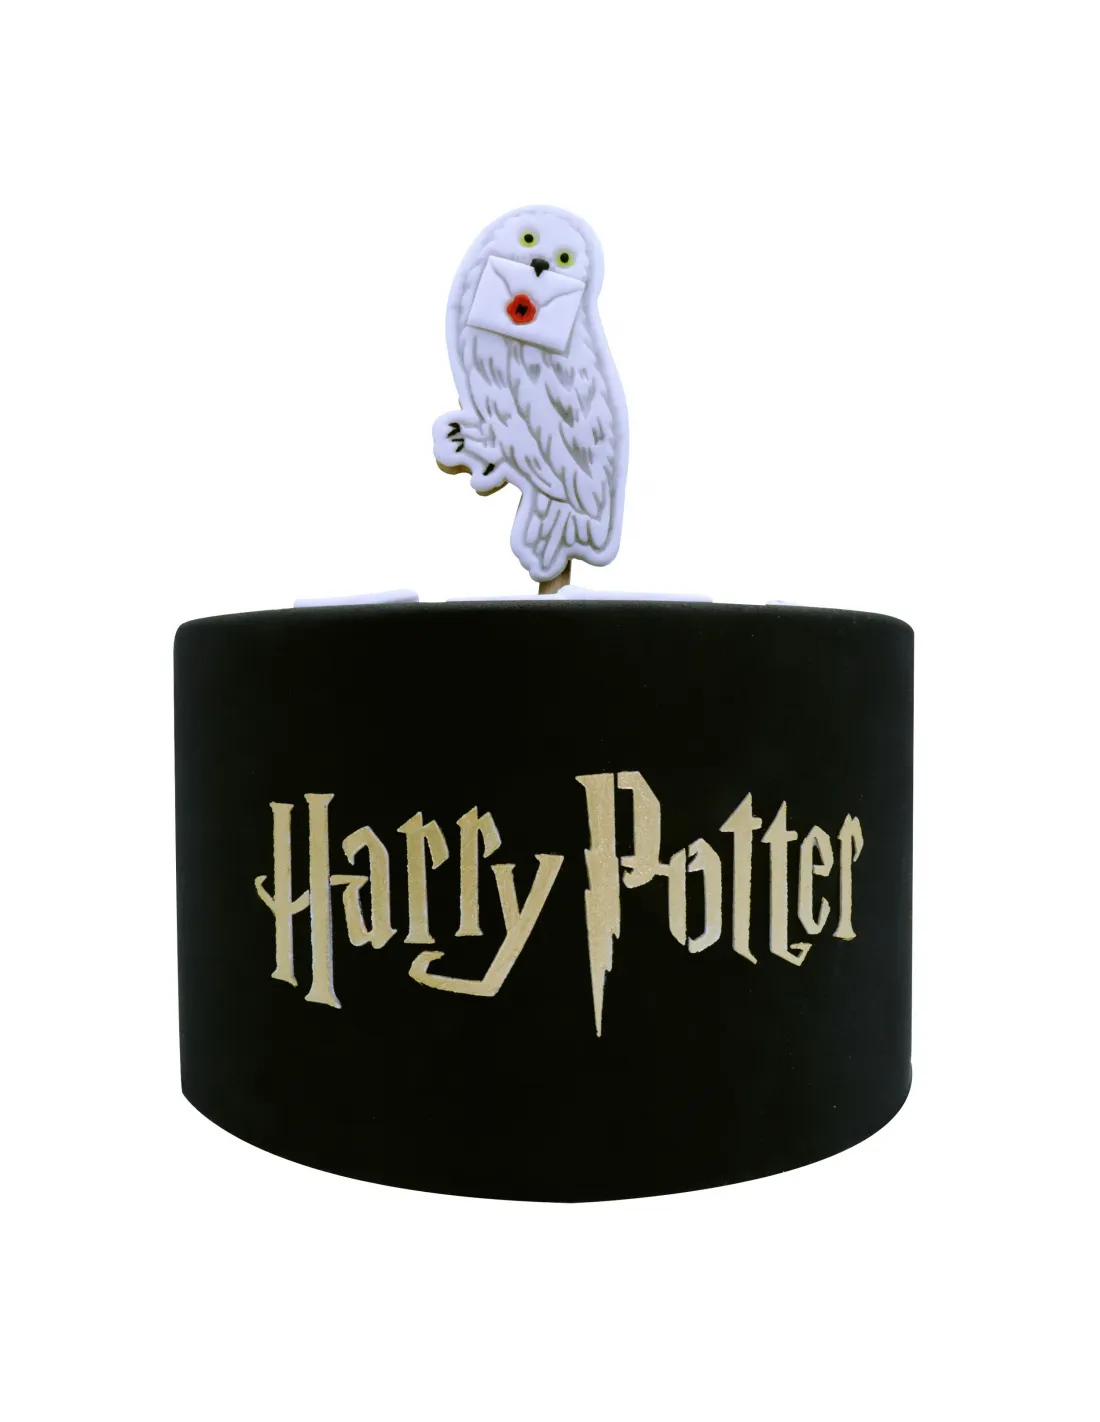 Stencil para tarta Harry Potter